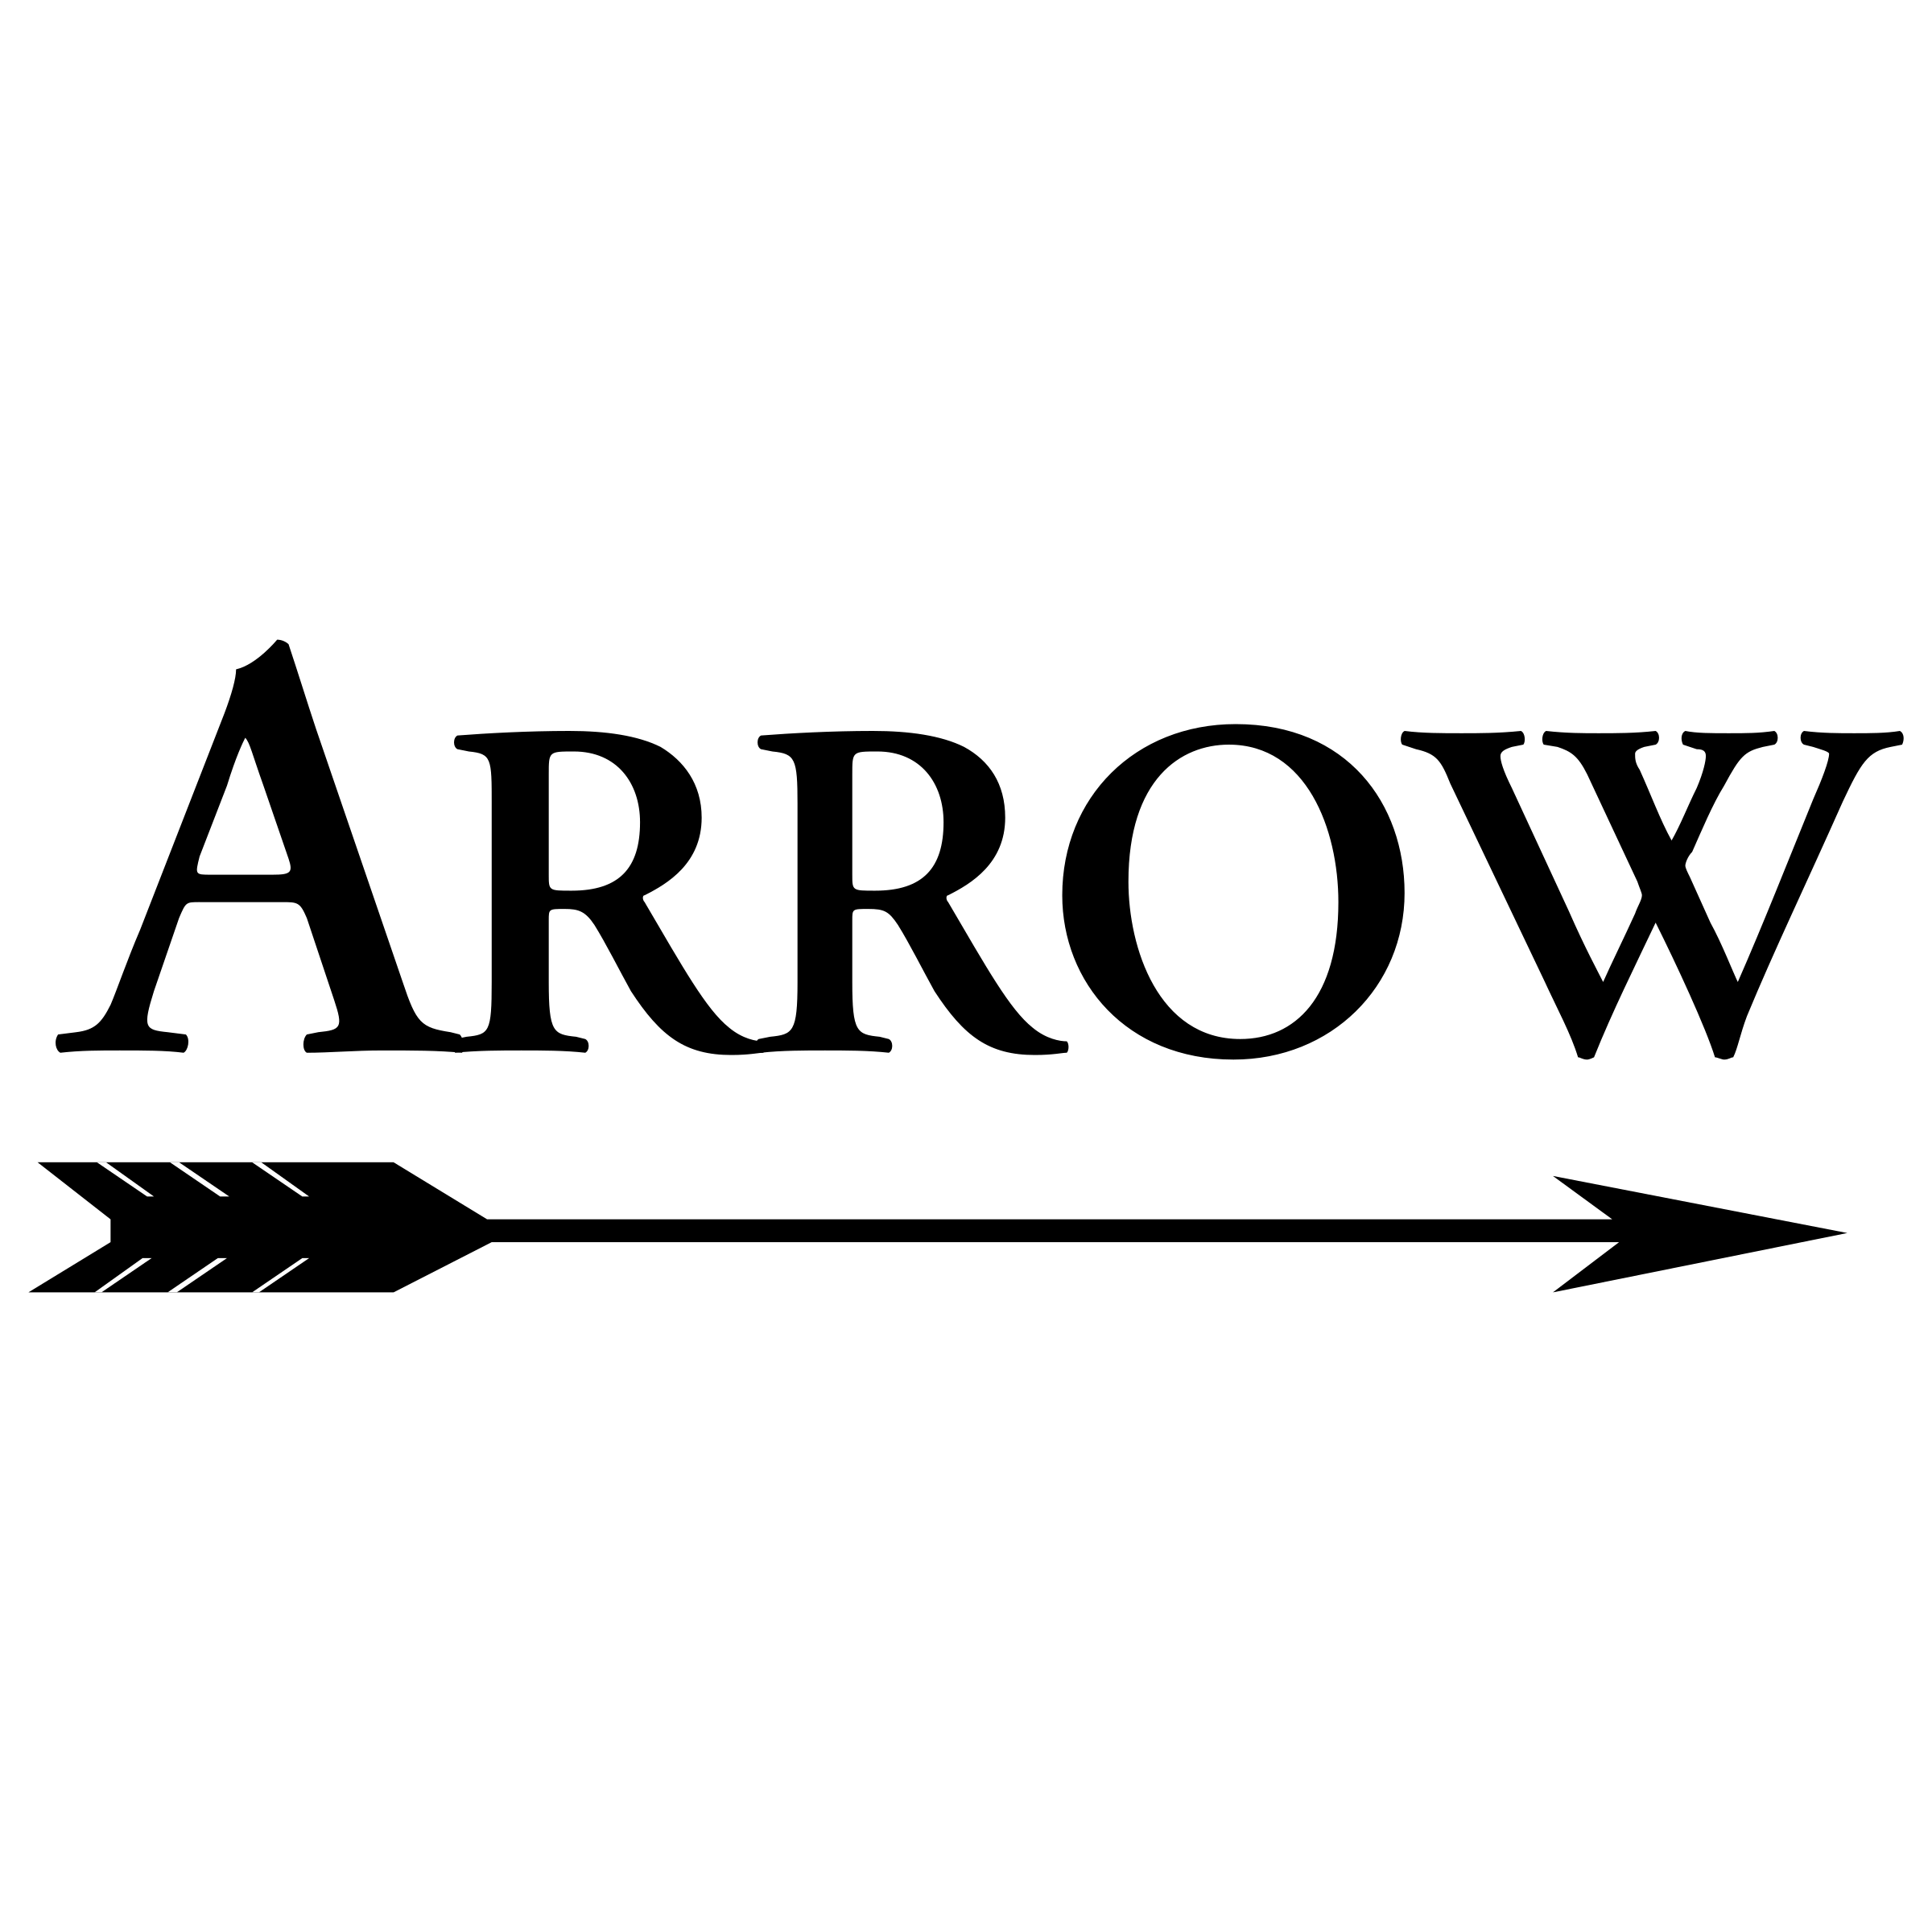 White Arrow Brand Logo - Arrow 02 Logo PNG Transparent & SVG Vector